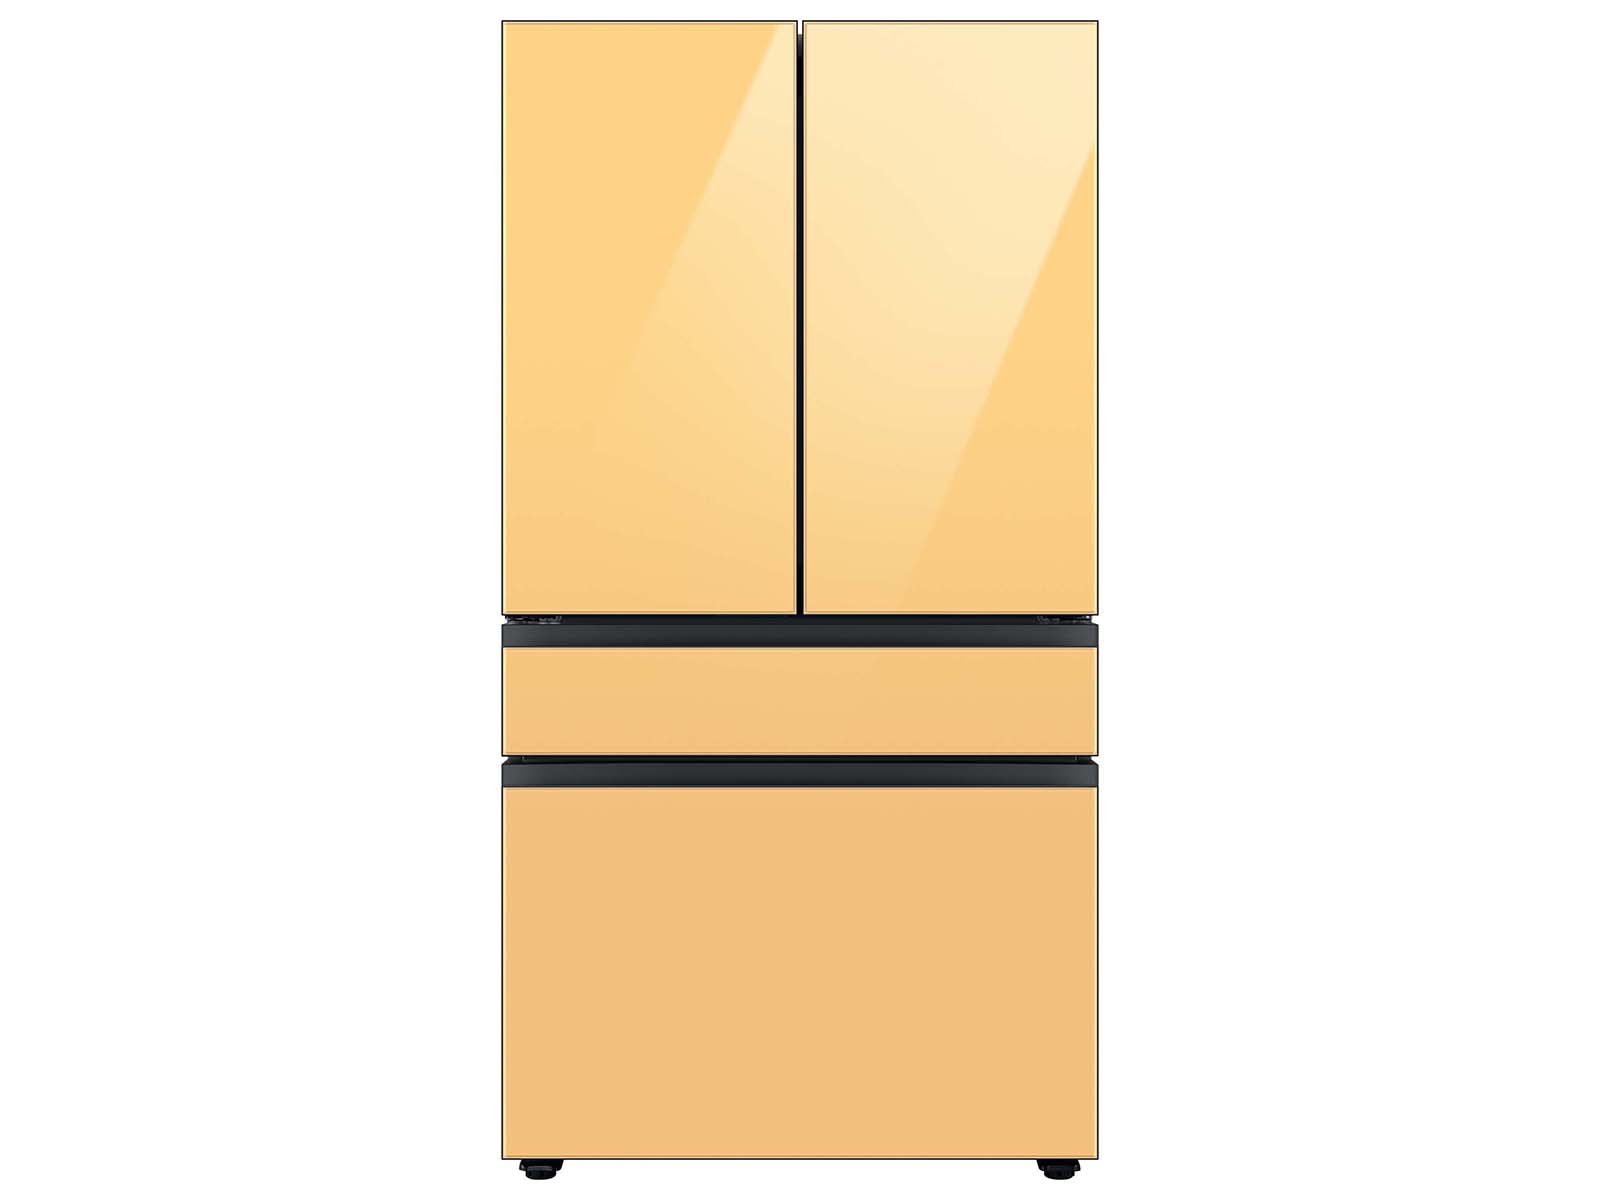 Bespoke 4-Door French Door Refrigerator (23 cu. ft.) with Customizable Door Panel Colors and Beverage Center&trade; in Sunrise Yellow Glass